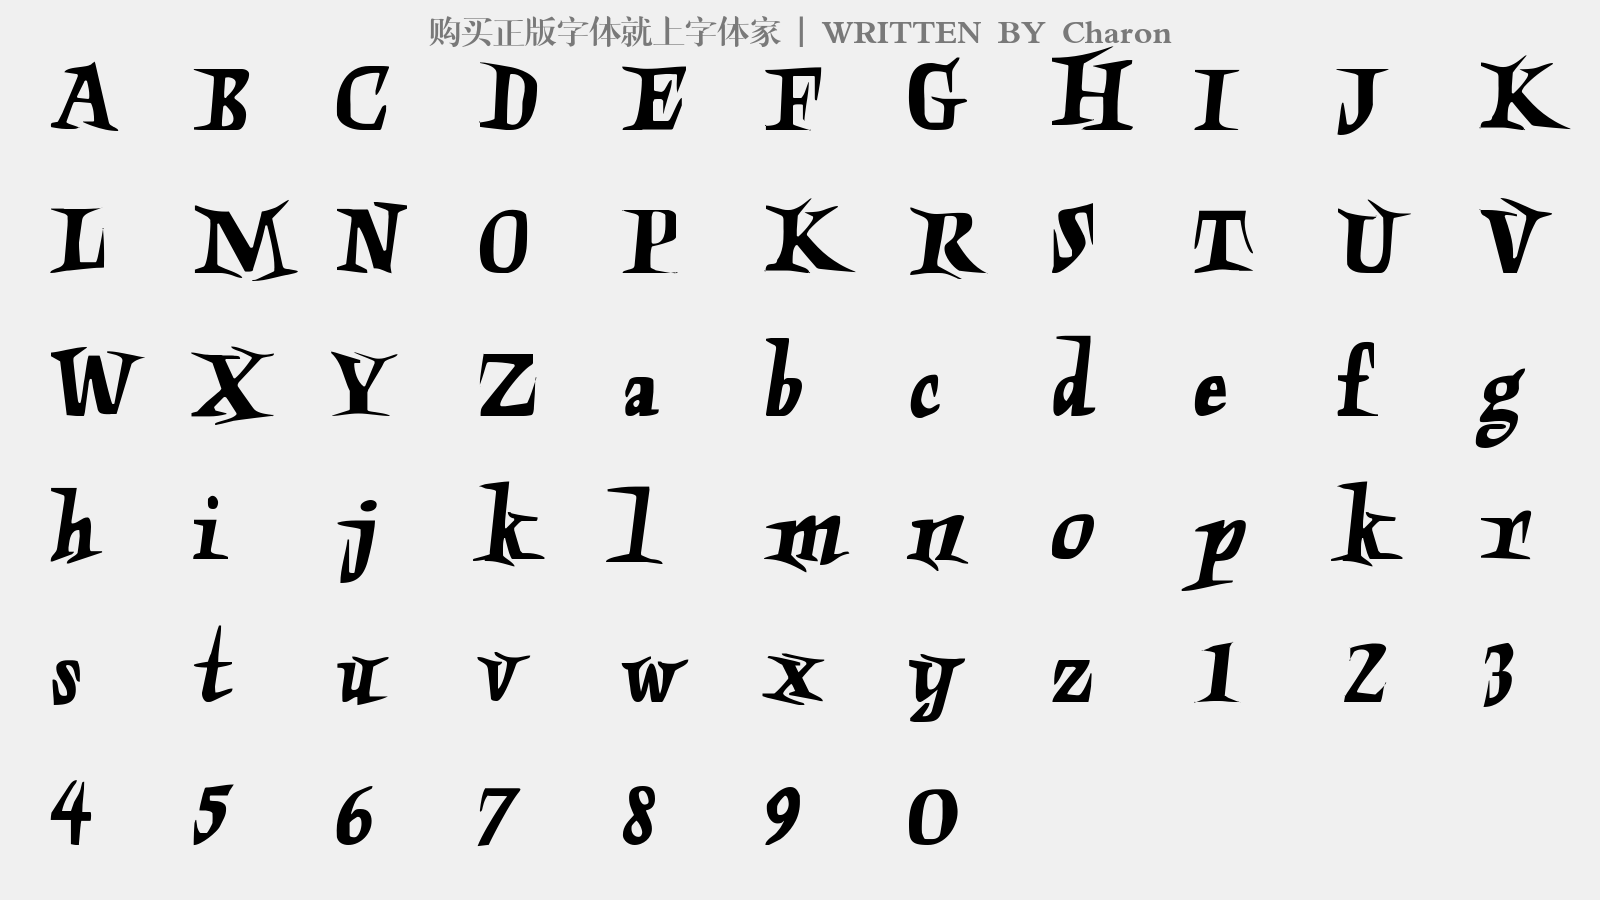 Charon - 大写字母/小写字母/数字